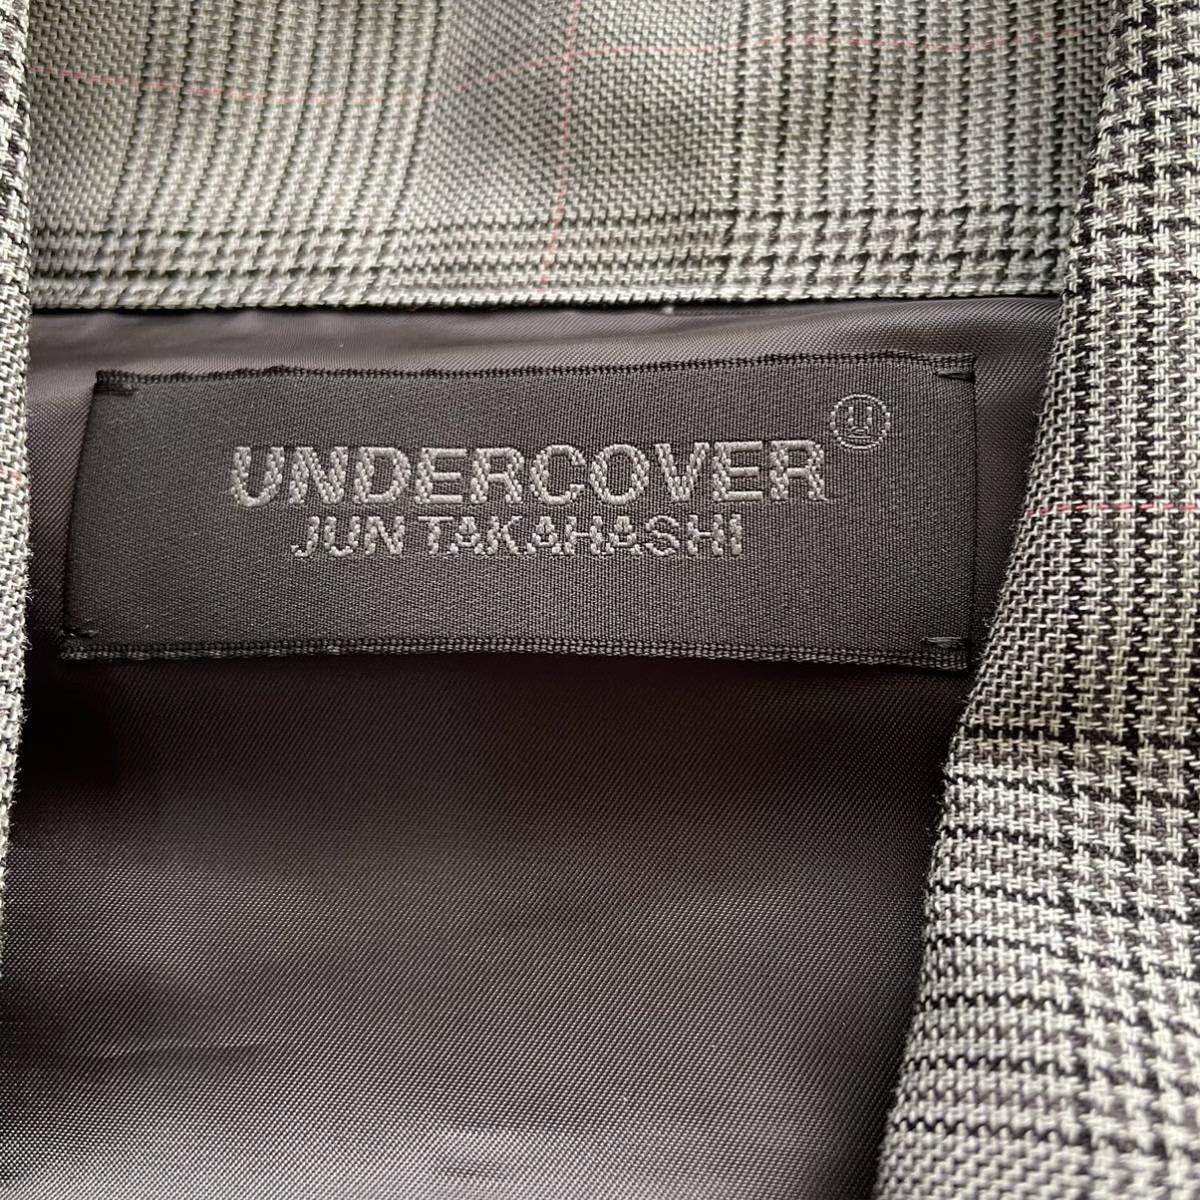 UNDER COVER グレンチェック柄 シャツジャケット SHIRT アンダーカバー JUN TAKAHASHI size5 レーヨン ドレープ XL